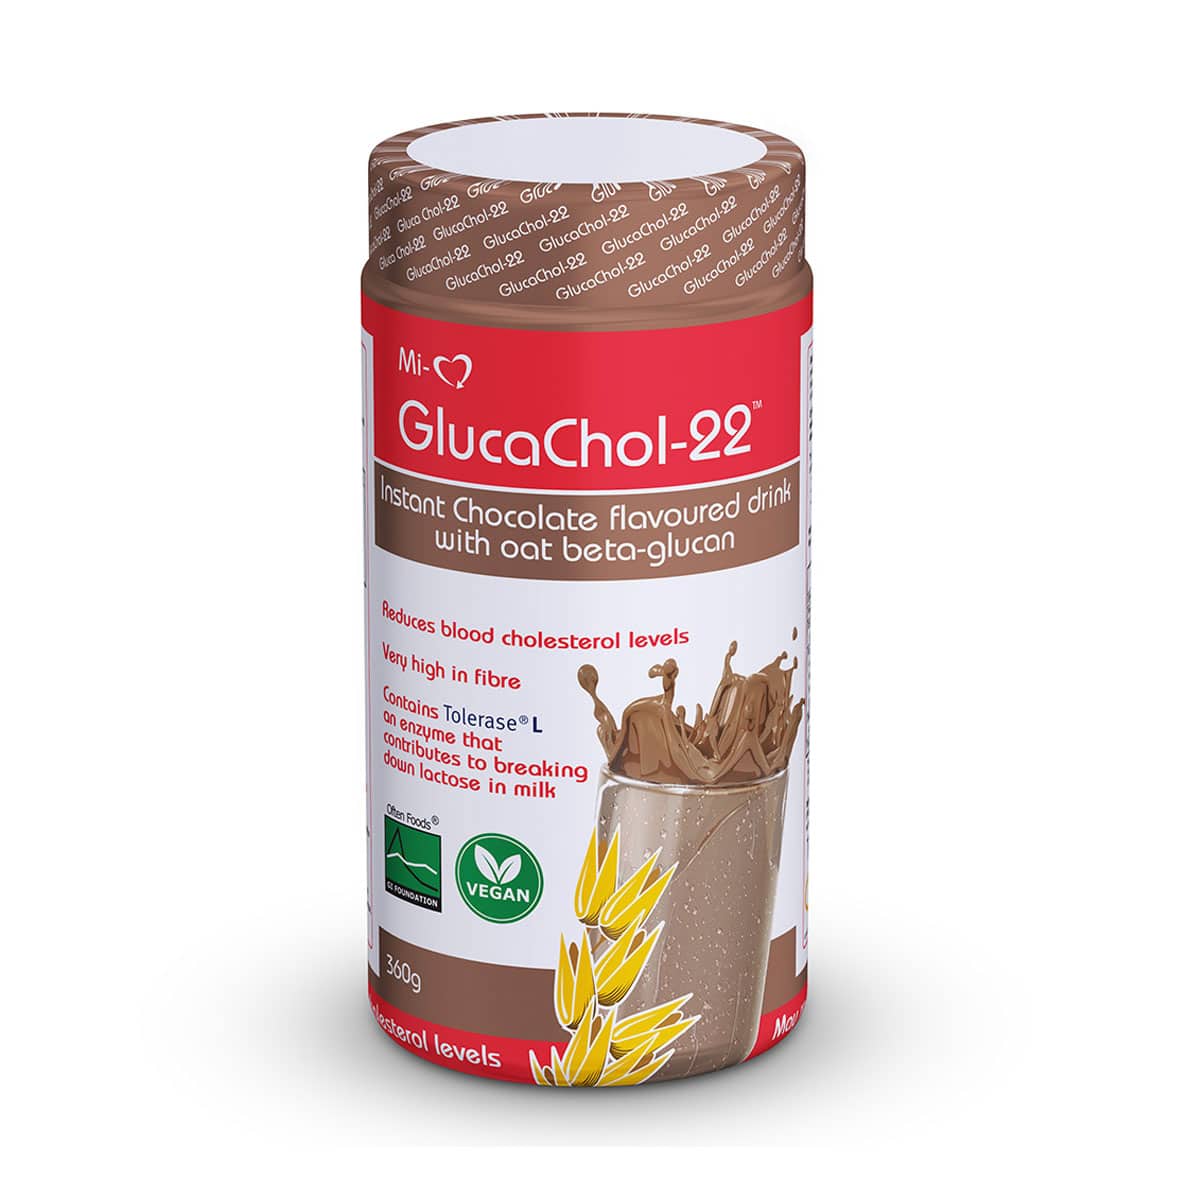 @Life GlucaChol-22 Oat Bran Powder Chocolate - 360g